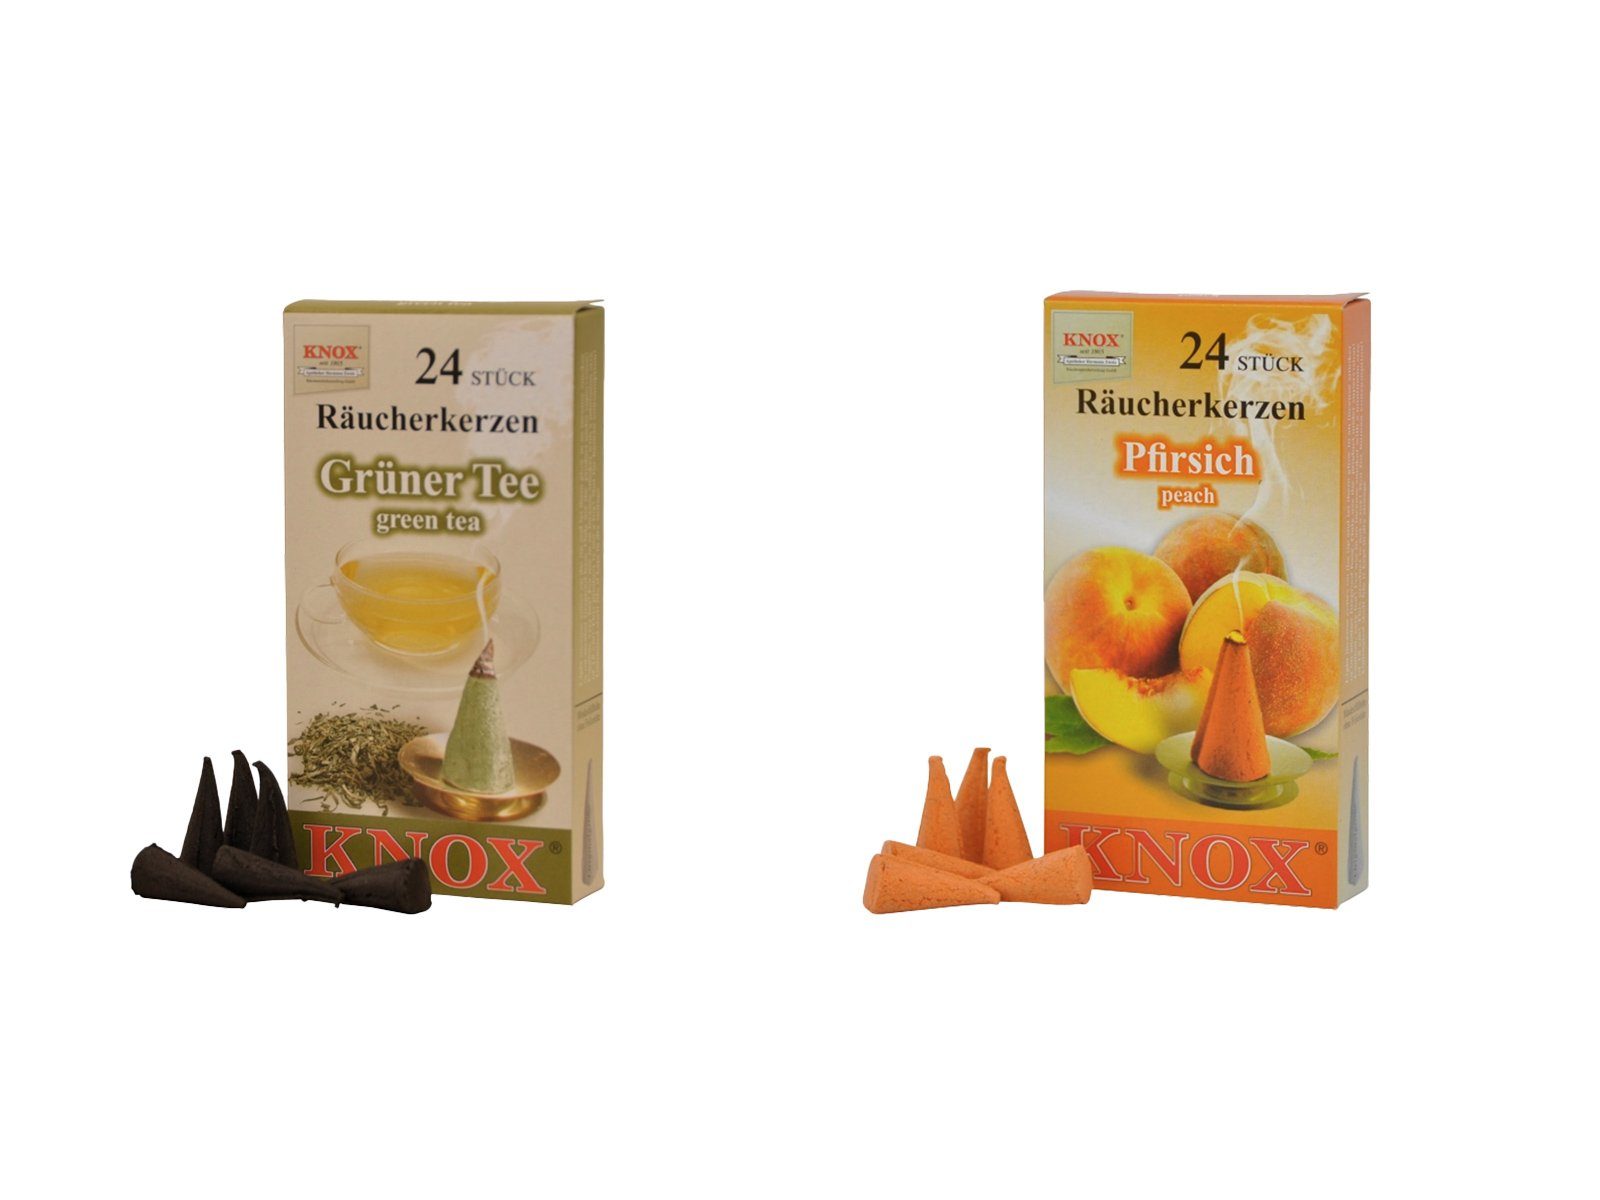 KNOX Duftkerze Räucherkerzen Teeset - Pfirsich Eistee -, mit fruchtigen Düfte - 24 Räucherkerzen pro Packung - Made in Germany